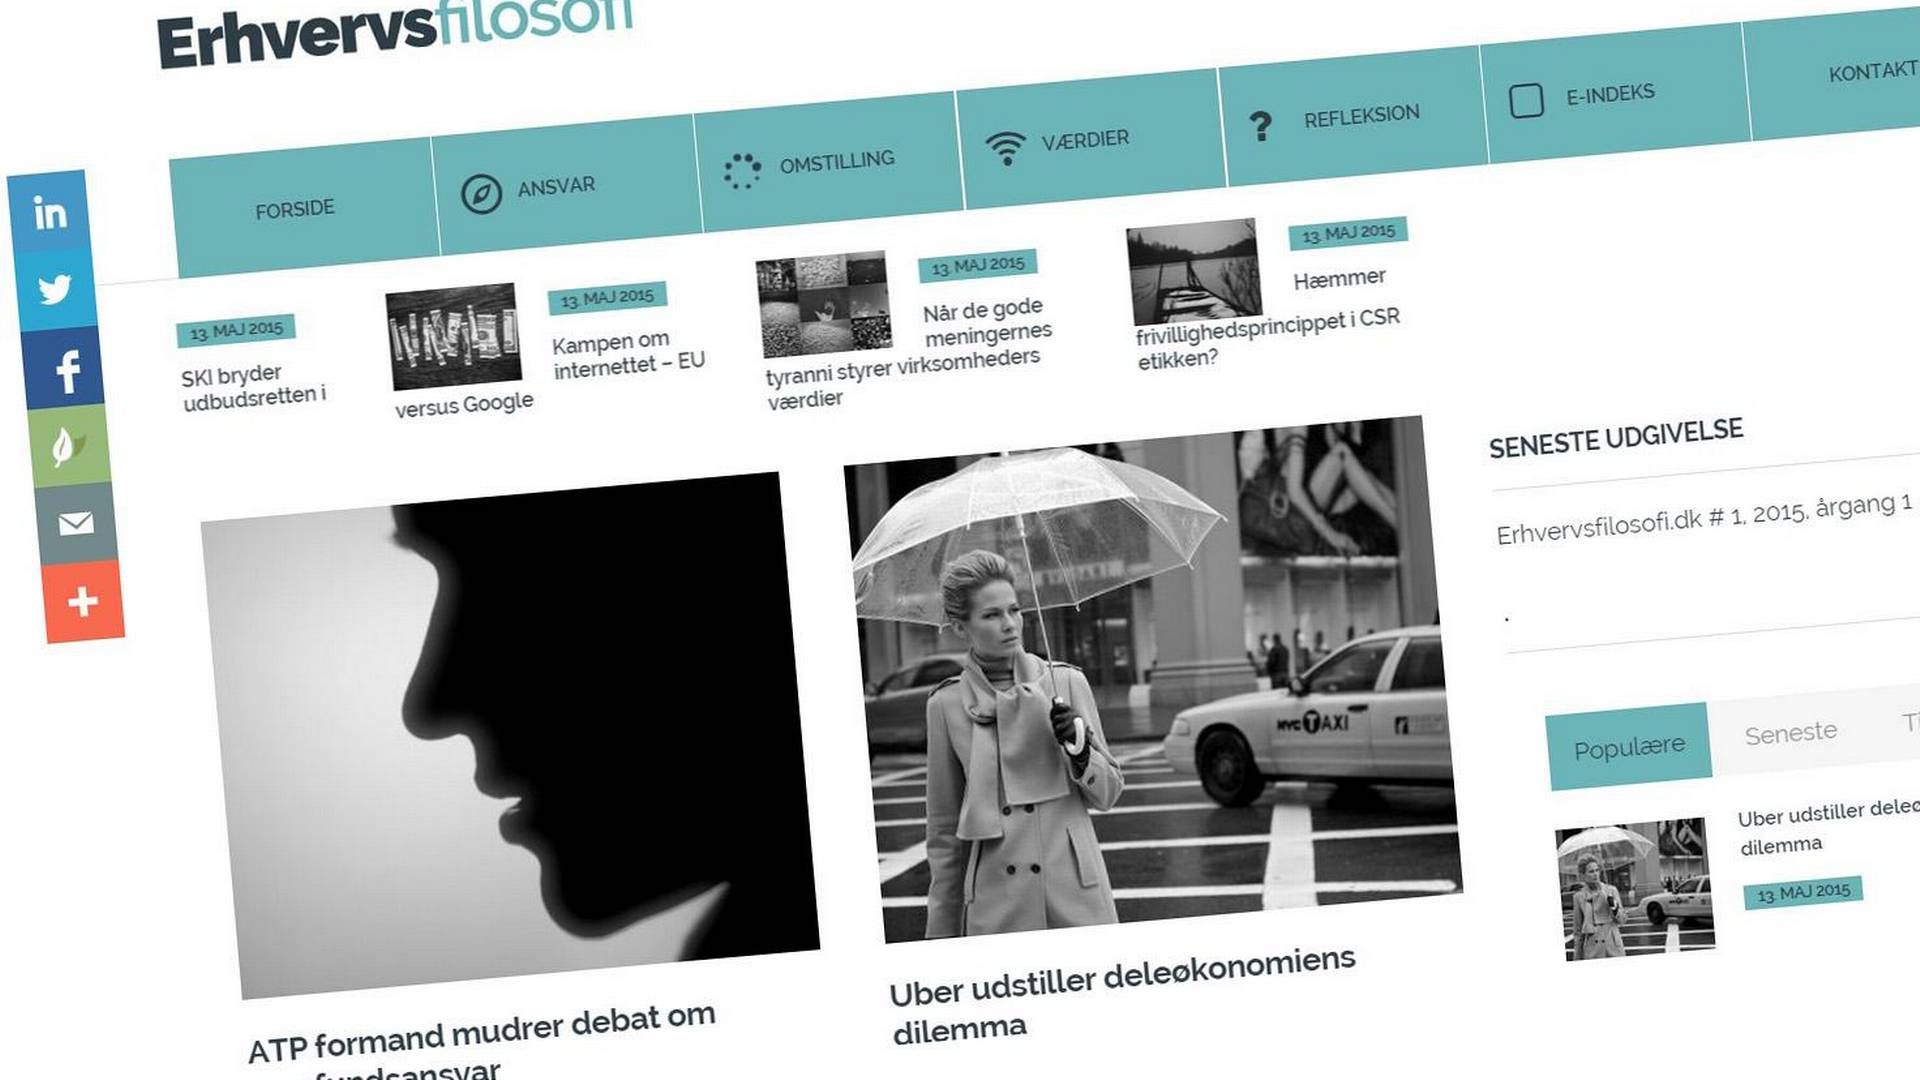 Erhvervsfilosofi.dk lancerer i dag som nyt erhvervsmedie, der sætter fokus på ansvar, omstilling og værdier. | Foto: Screendump fra erhvervsfilosofi.dk